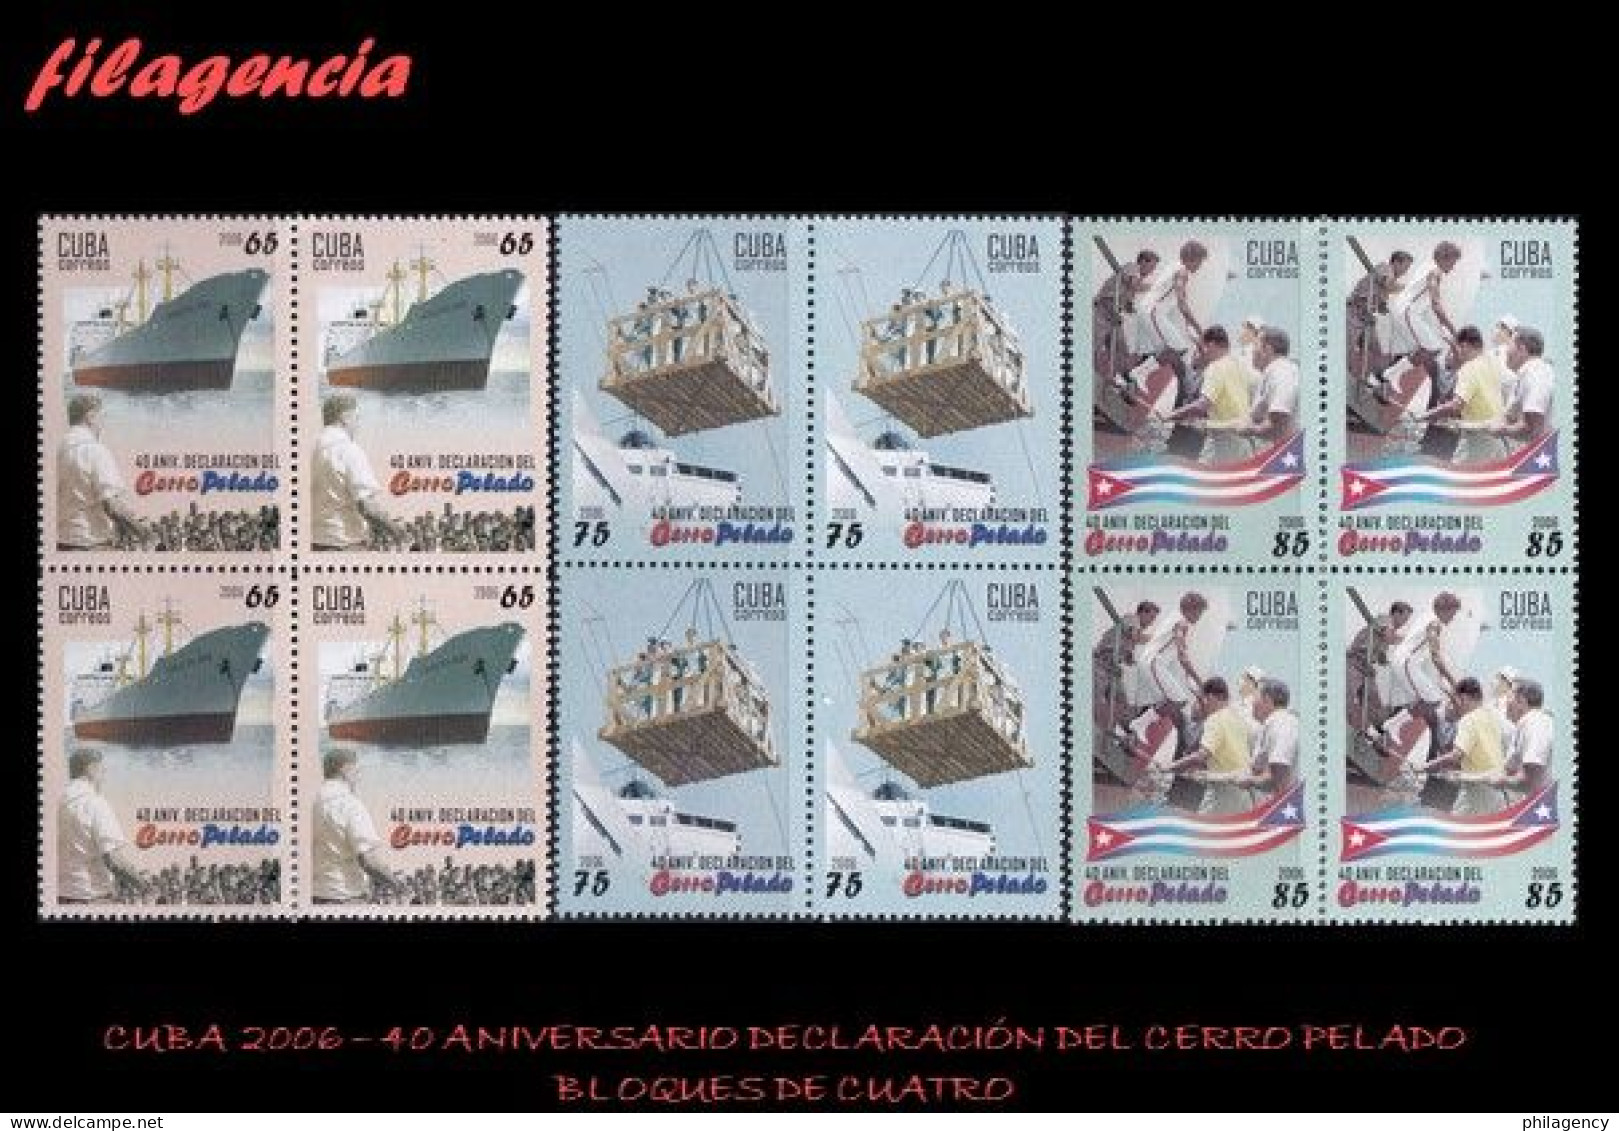 CUBA. BLOQUES DE CUATRO. 2006-14 40 ANIVERSARIO DE LA DECLARACIÓN DEL CERRO PELADO. DEPORTES - Nuevos